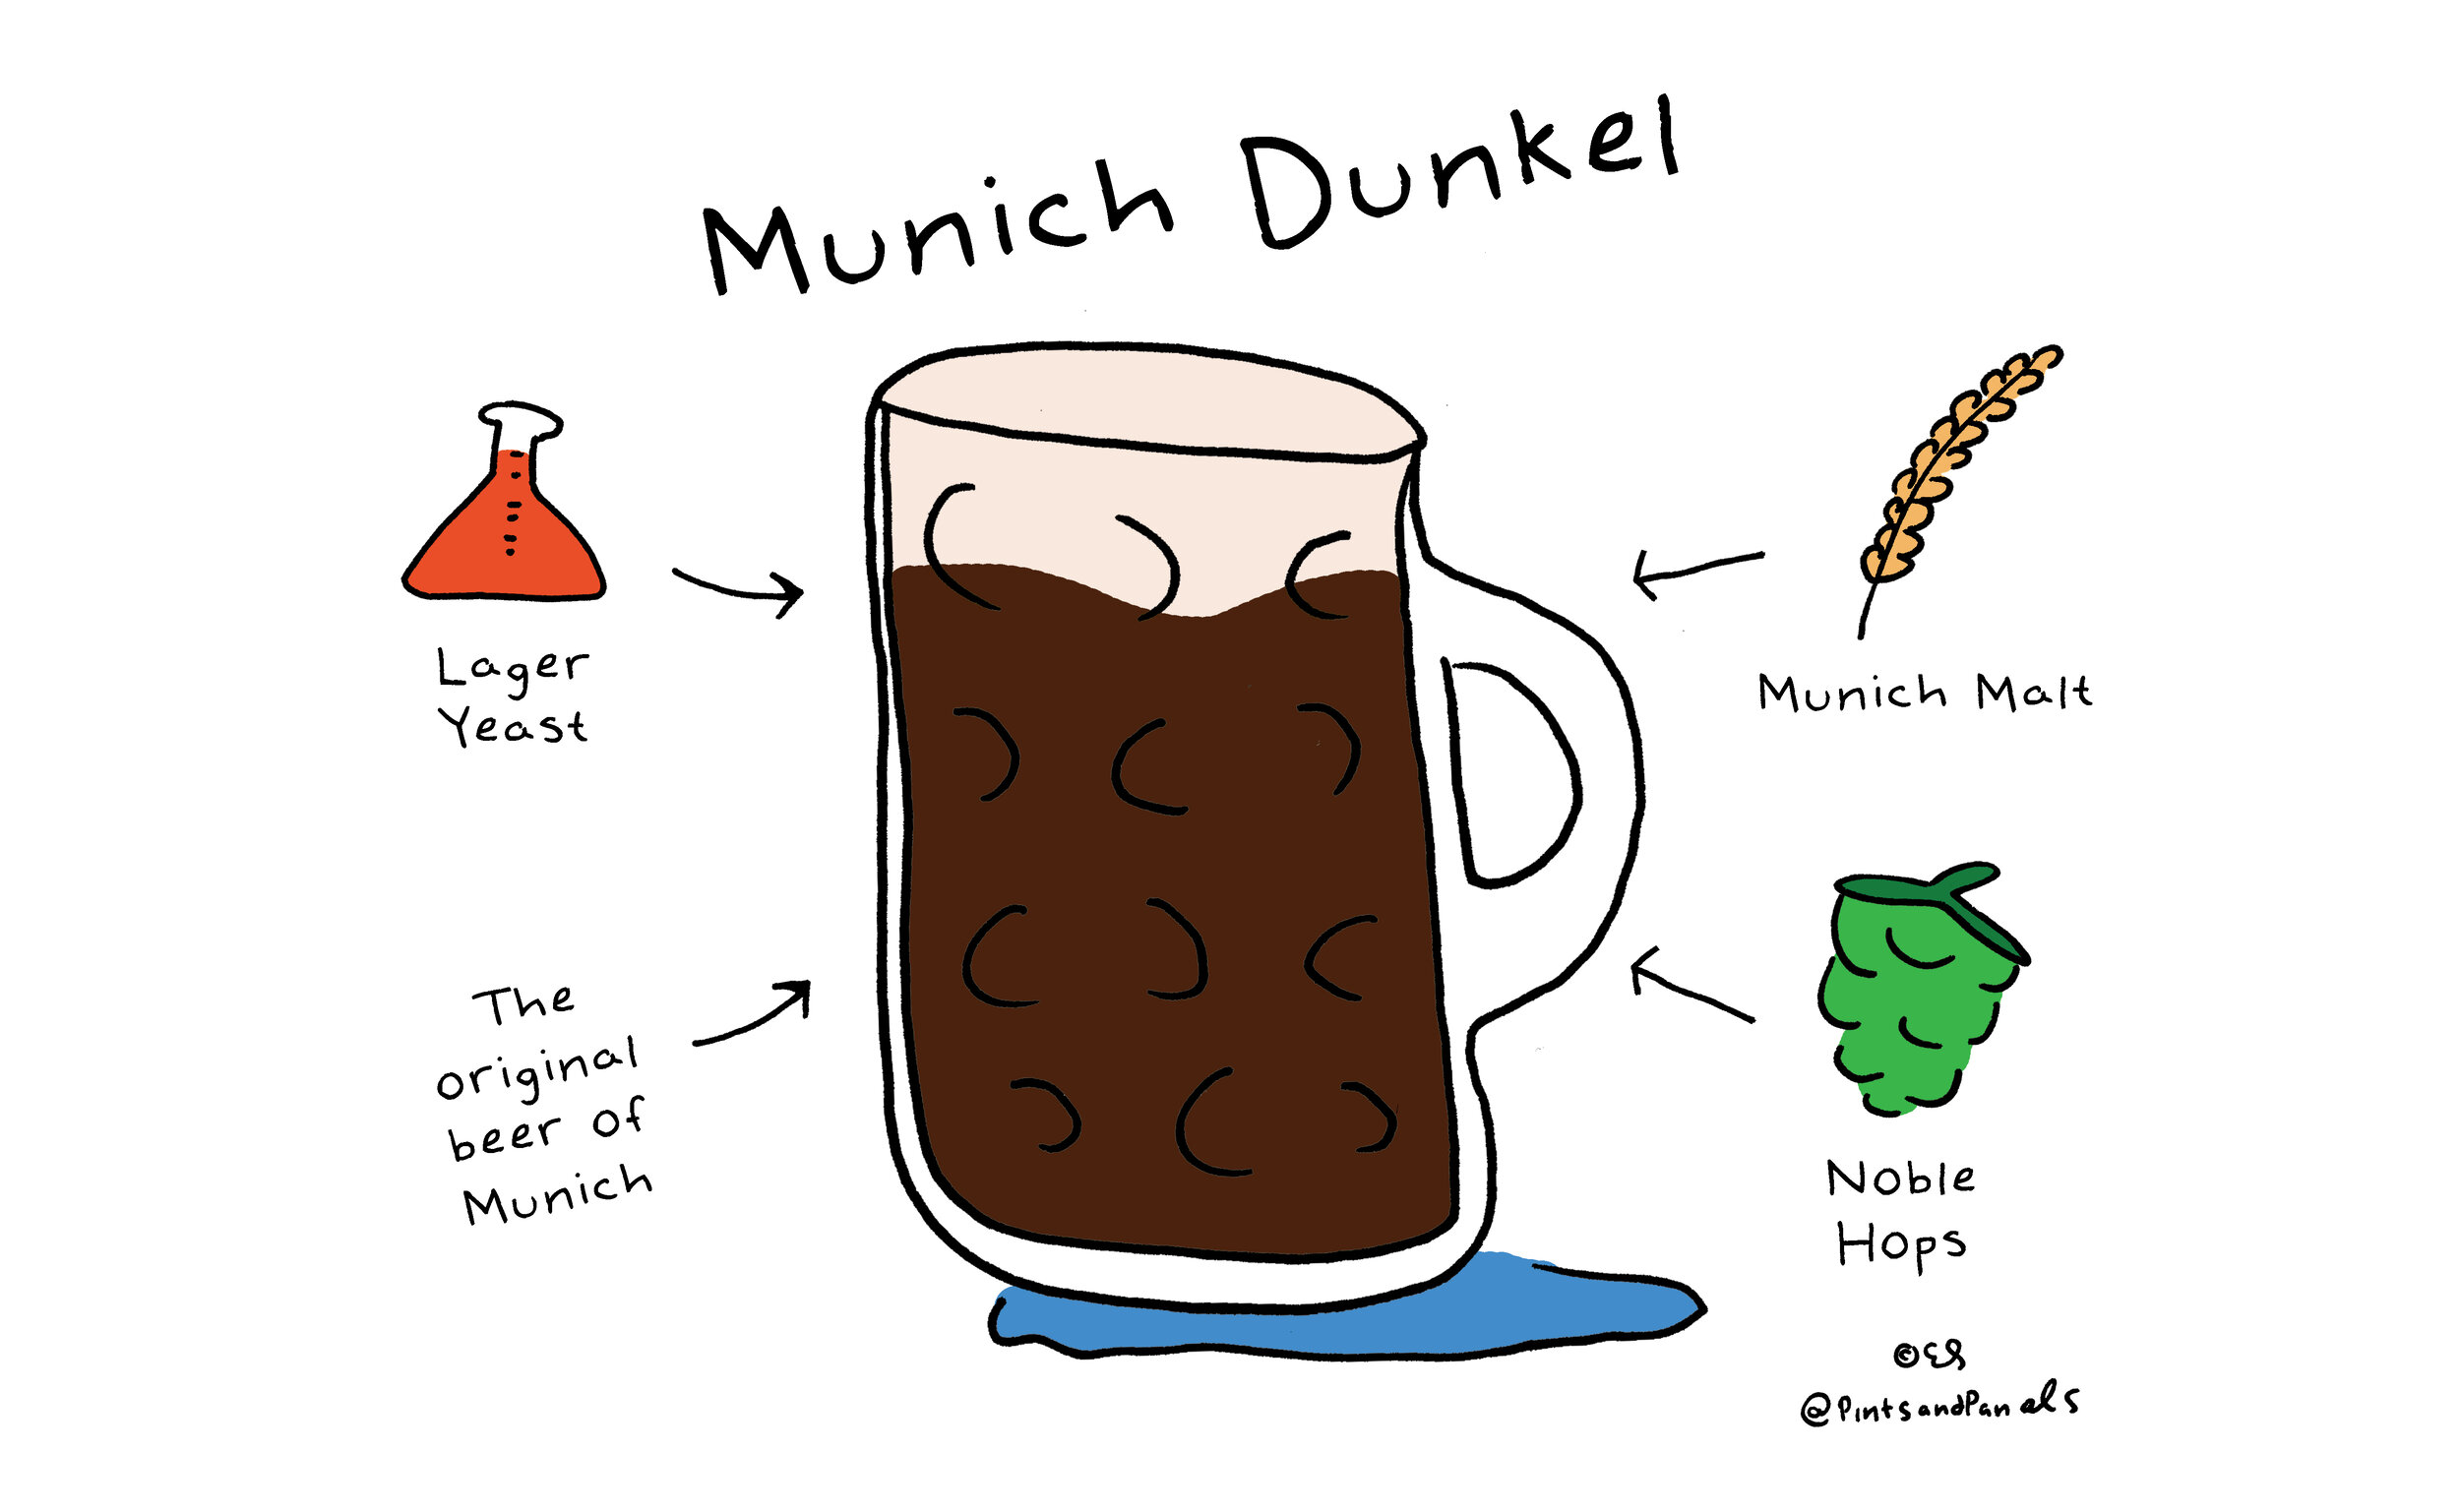 Image Source: https://www.pintsandpanels.com/www.pintsandpanels.com/beer-style-simple-munich-dunkel